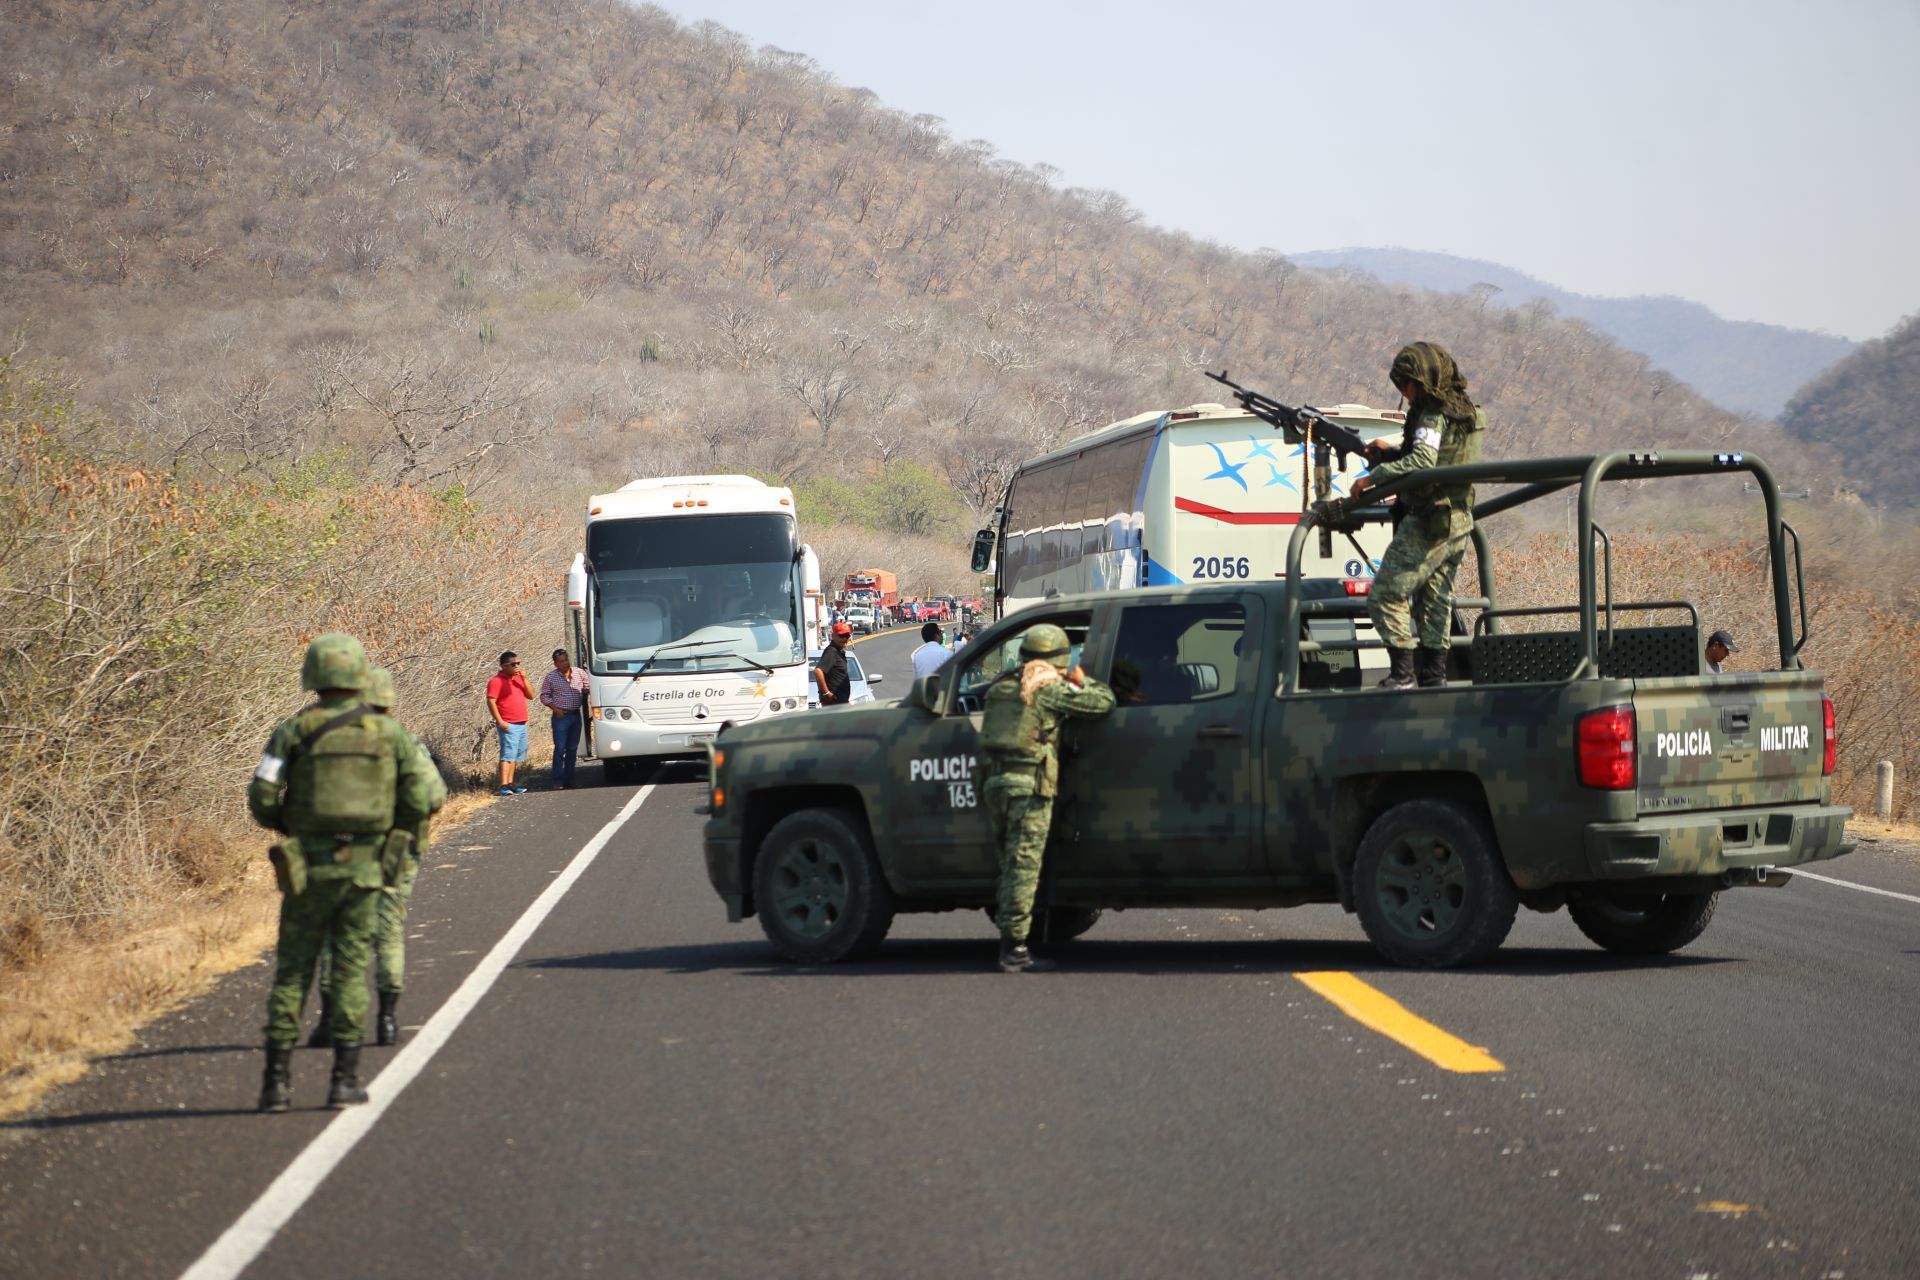 GIEI señaló que Guerreros Unidos cooptó a miembros de las Fuerzas Armadas antes de la desaparición de los 43 normalistas